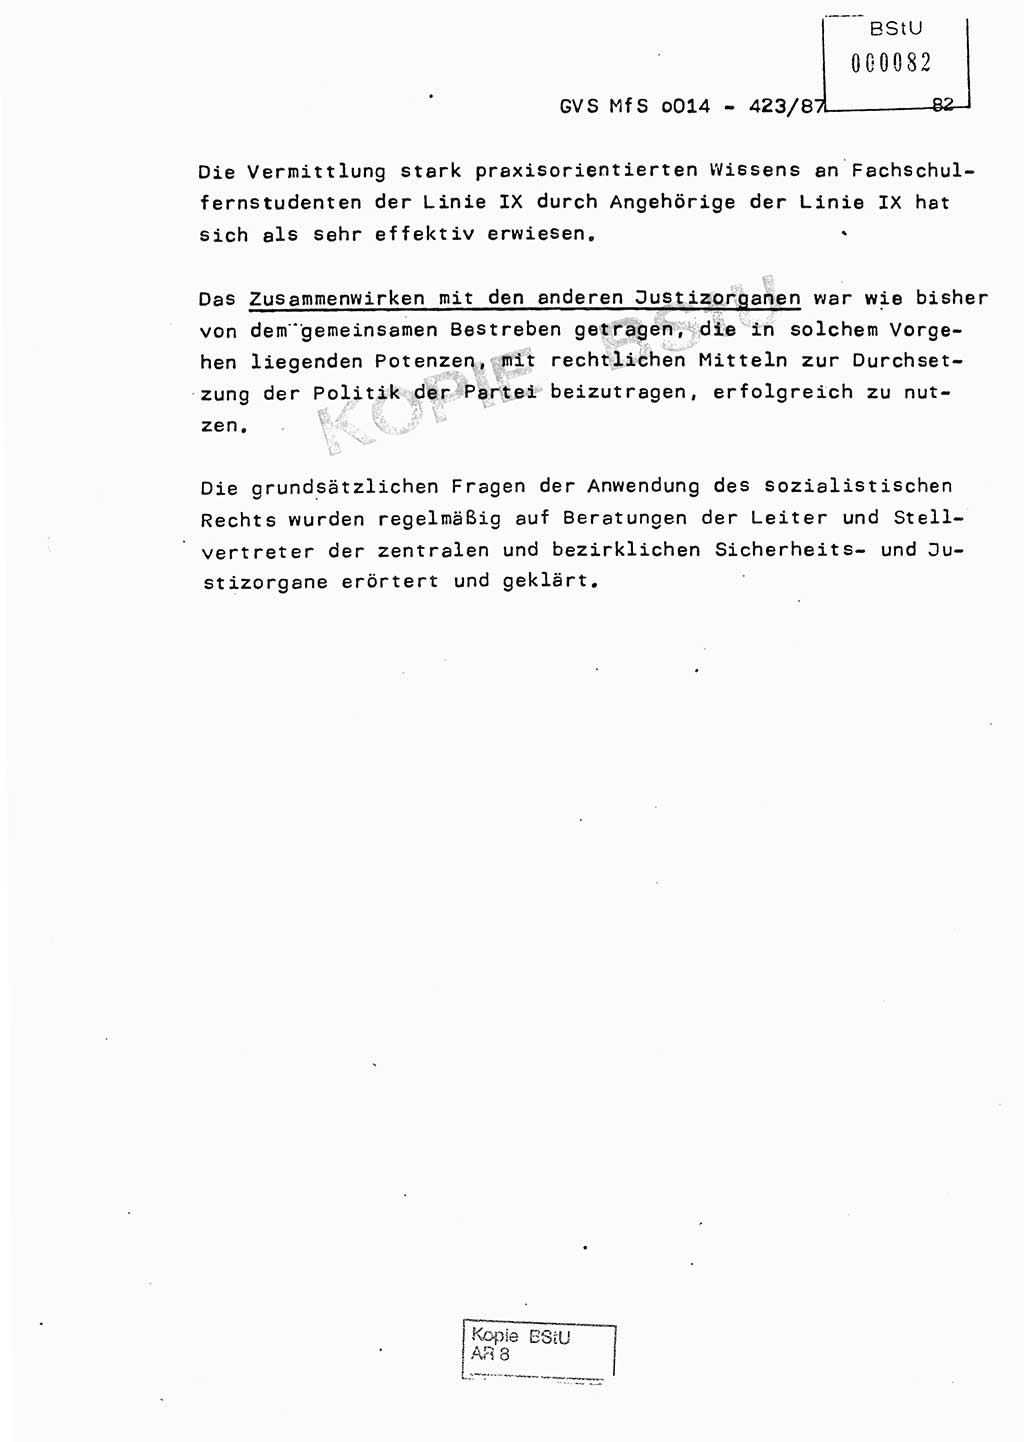 Jahresbericht der Hauptabteilung (HA) Ⅸ 1986, Einschätzung der Wirksamkeit der Untersuchungsarbeit im Jahre 1986, Ministerium für Staatssicherheit (MfS) der Deutschen Demokratischen Republik (DDR), Hauptabteilung Ⅸ, Geheime Verschlußsache (GVS) o014-423/87, Berlin 1987, Seite 82 (Einsch. MfS DDR HA Ⅸ GVS o014-423/87 1986, S. 82)